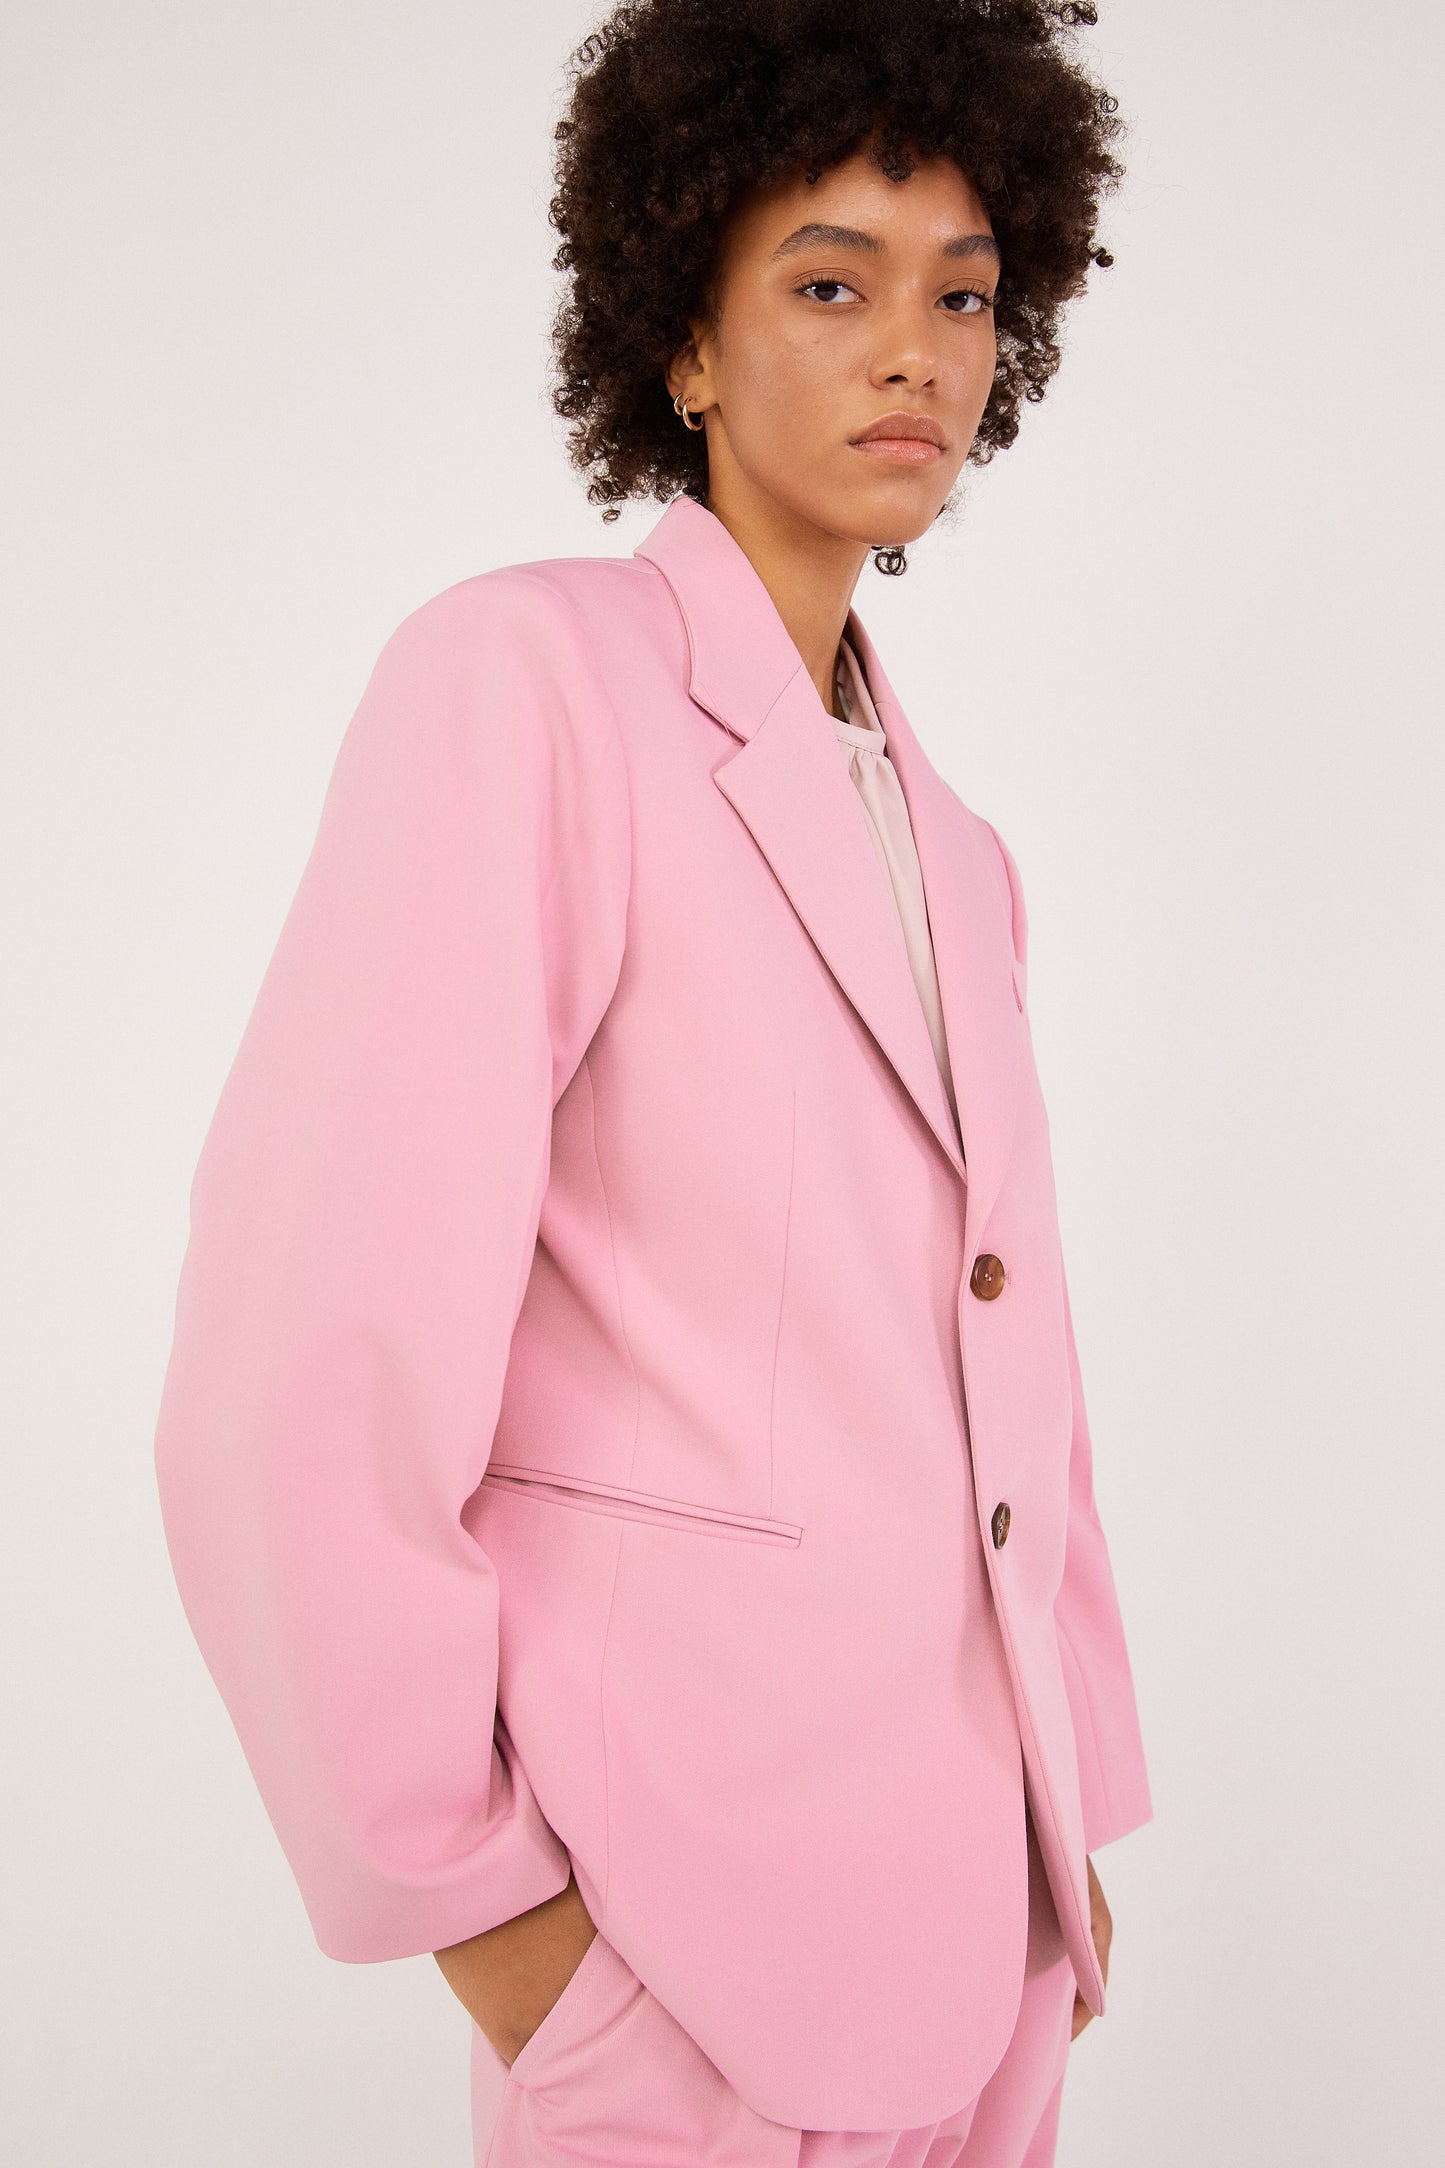 Notch Lapel Suit Blazer, Pastel Pink